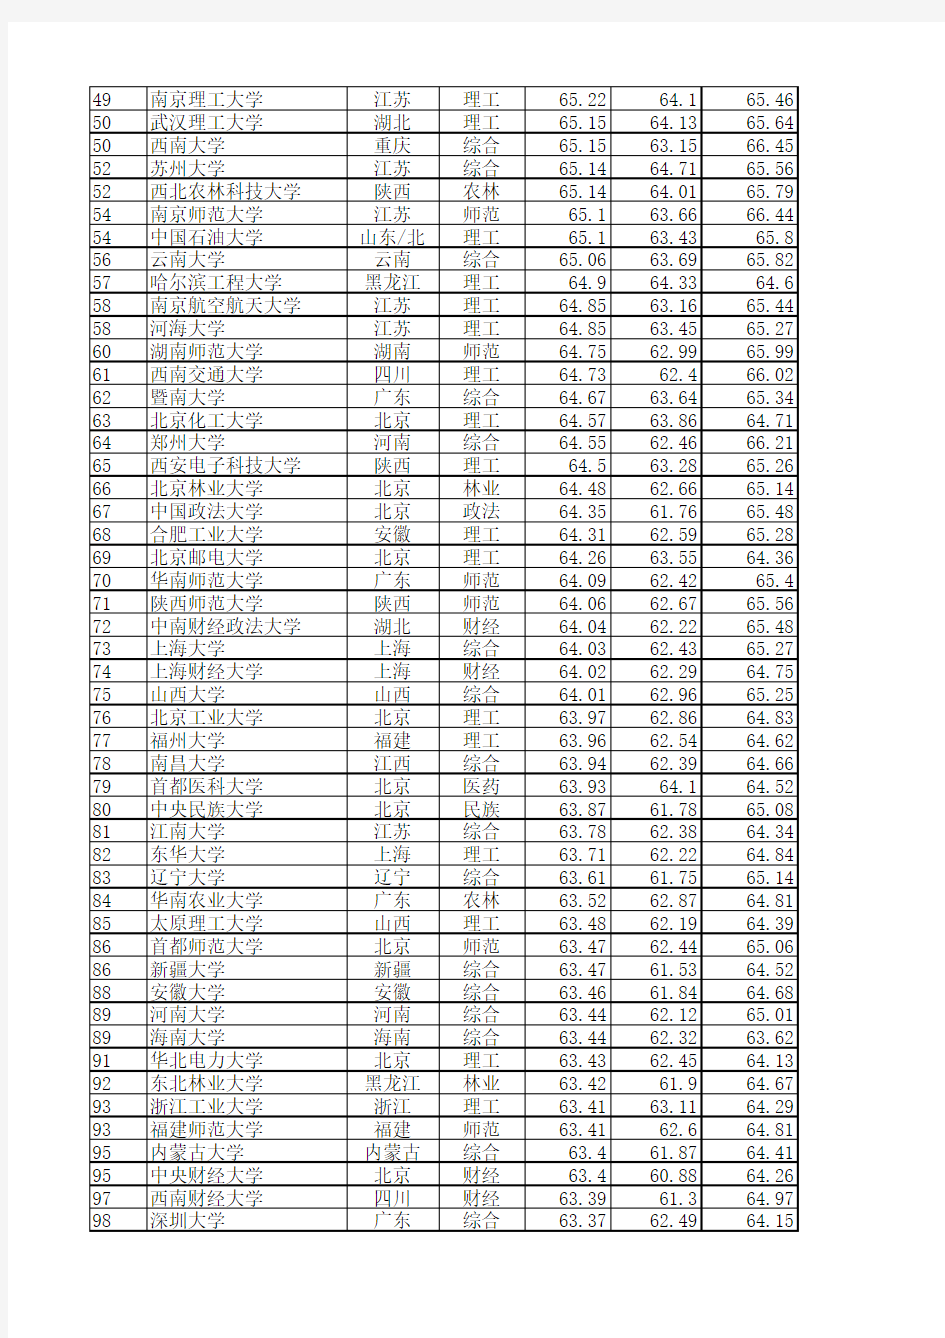 中国校友会2014中国大学排行榜(1-700)